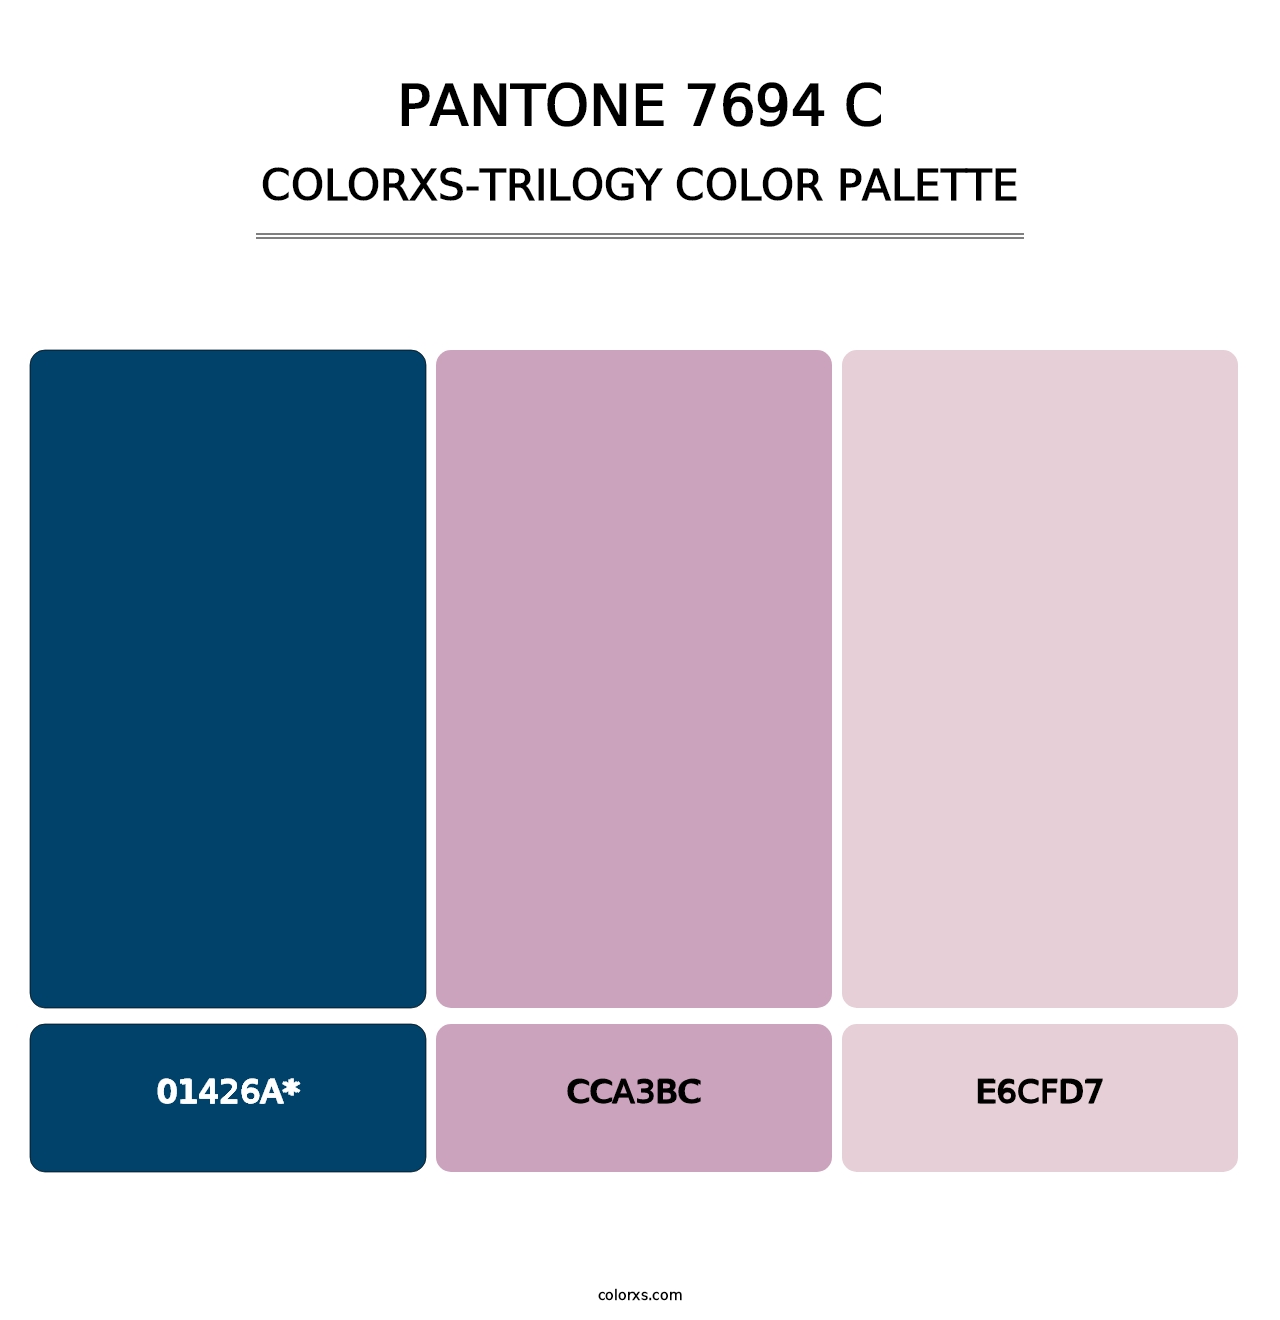 PANTONE 7694 C - Colorxs Trilogy Palette